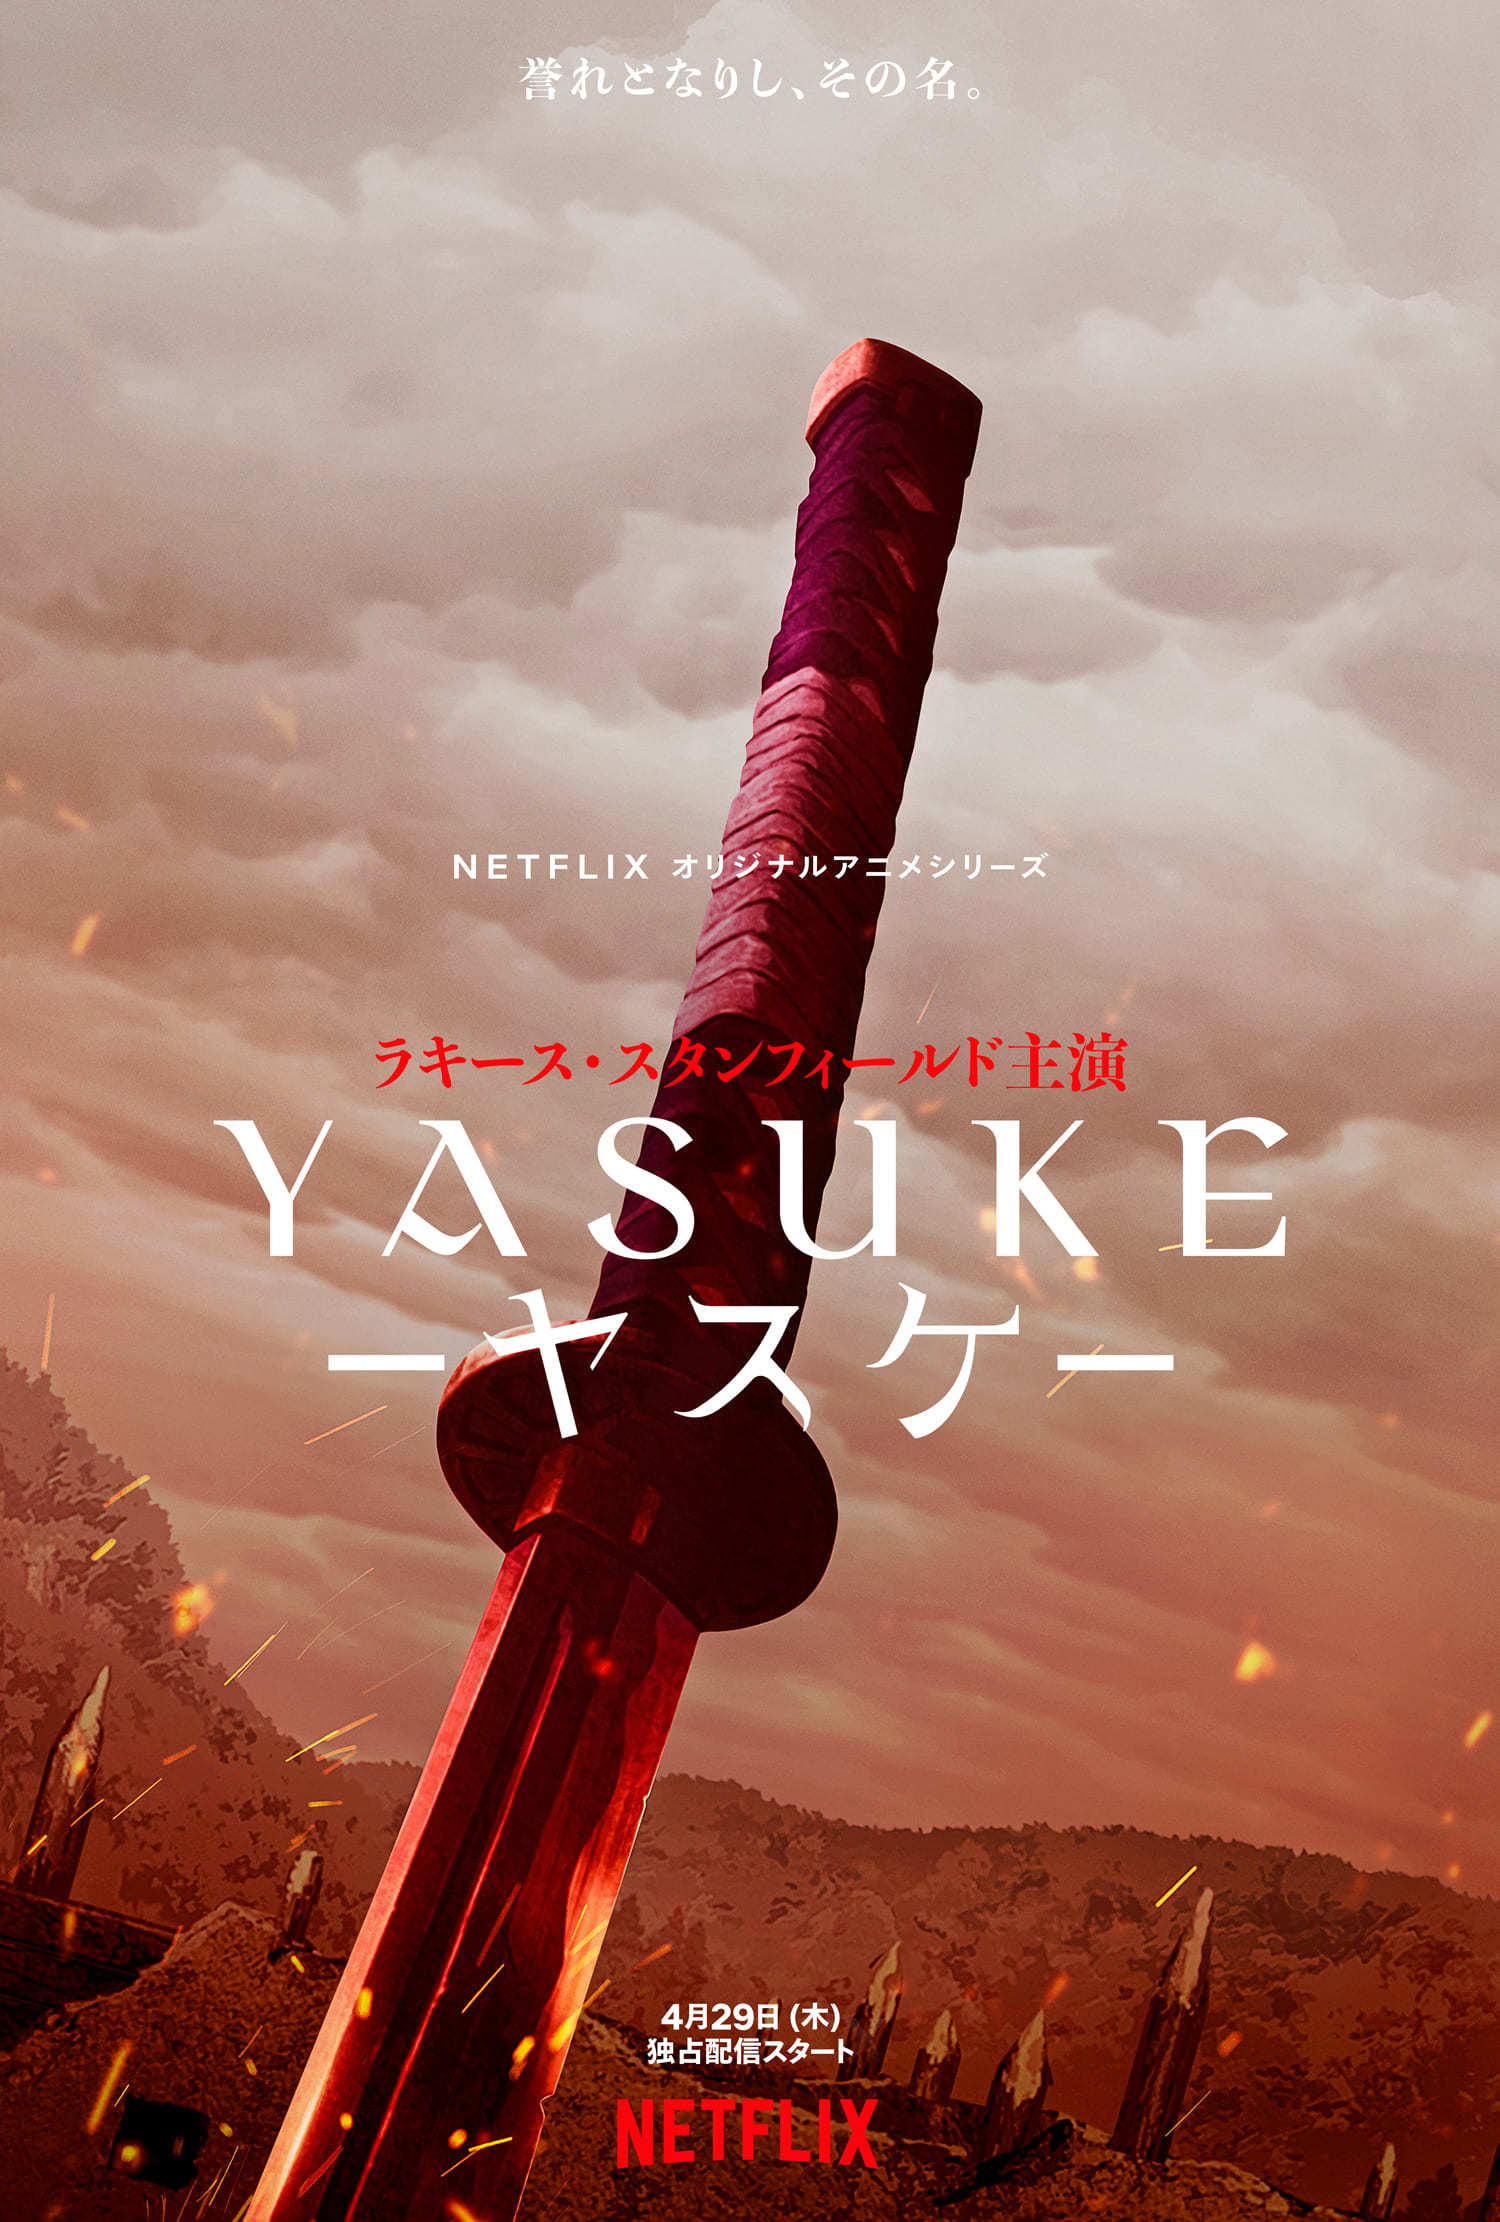 Netflixオリジナルアニメシリーズ『Yasuke -ヤスケ-』ティザービジュアル